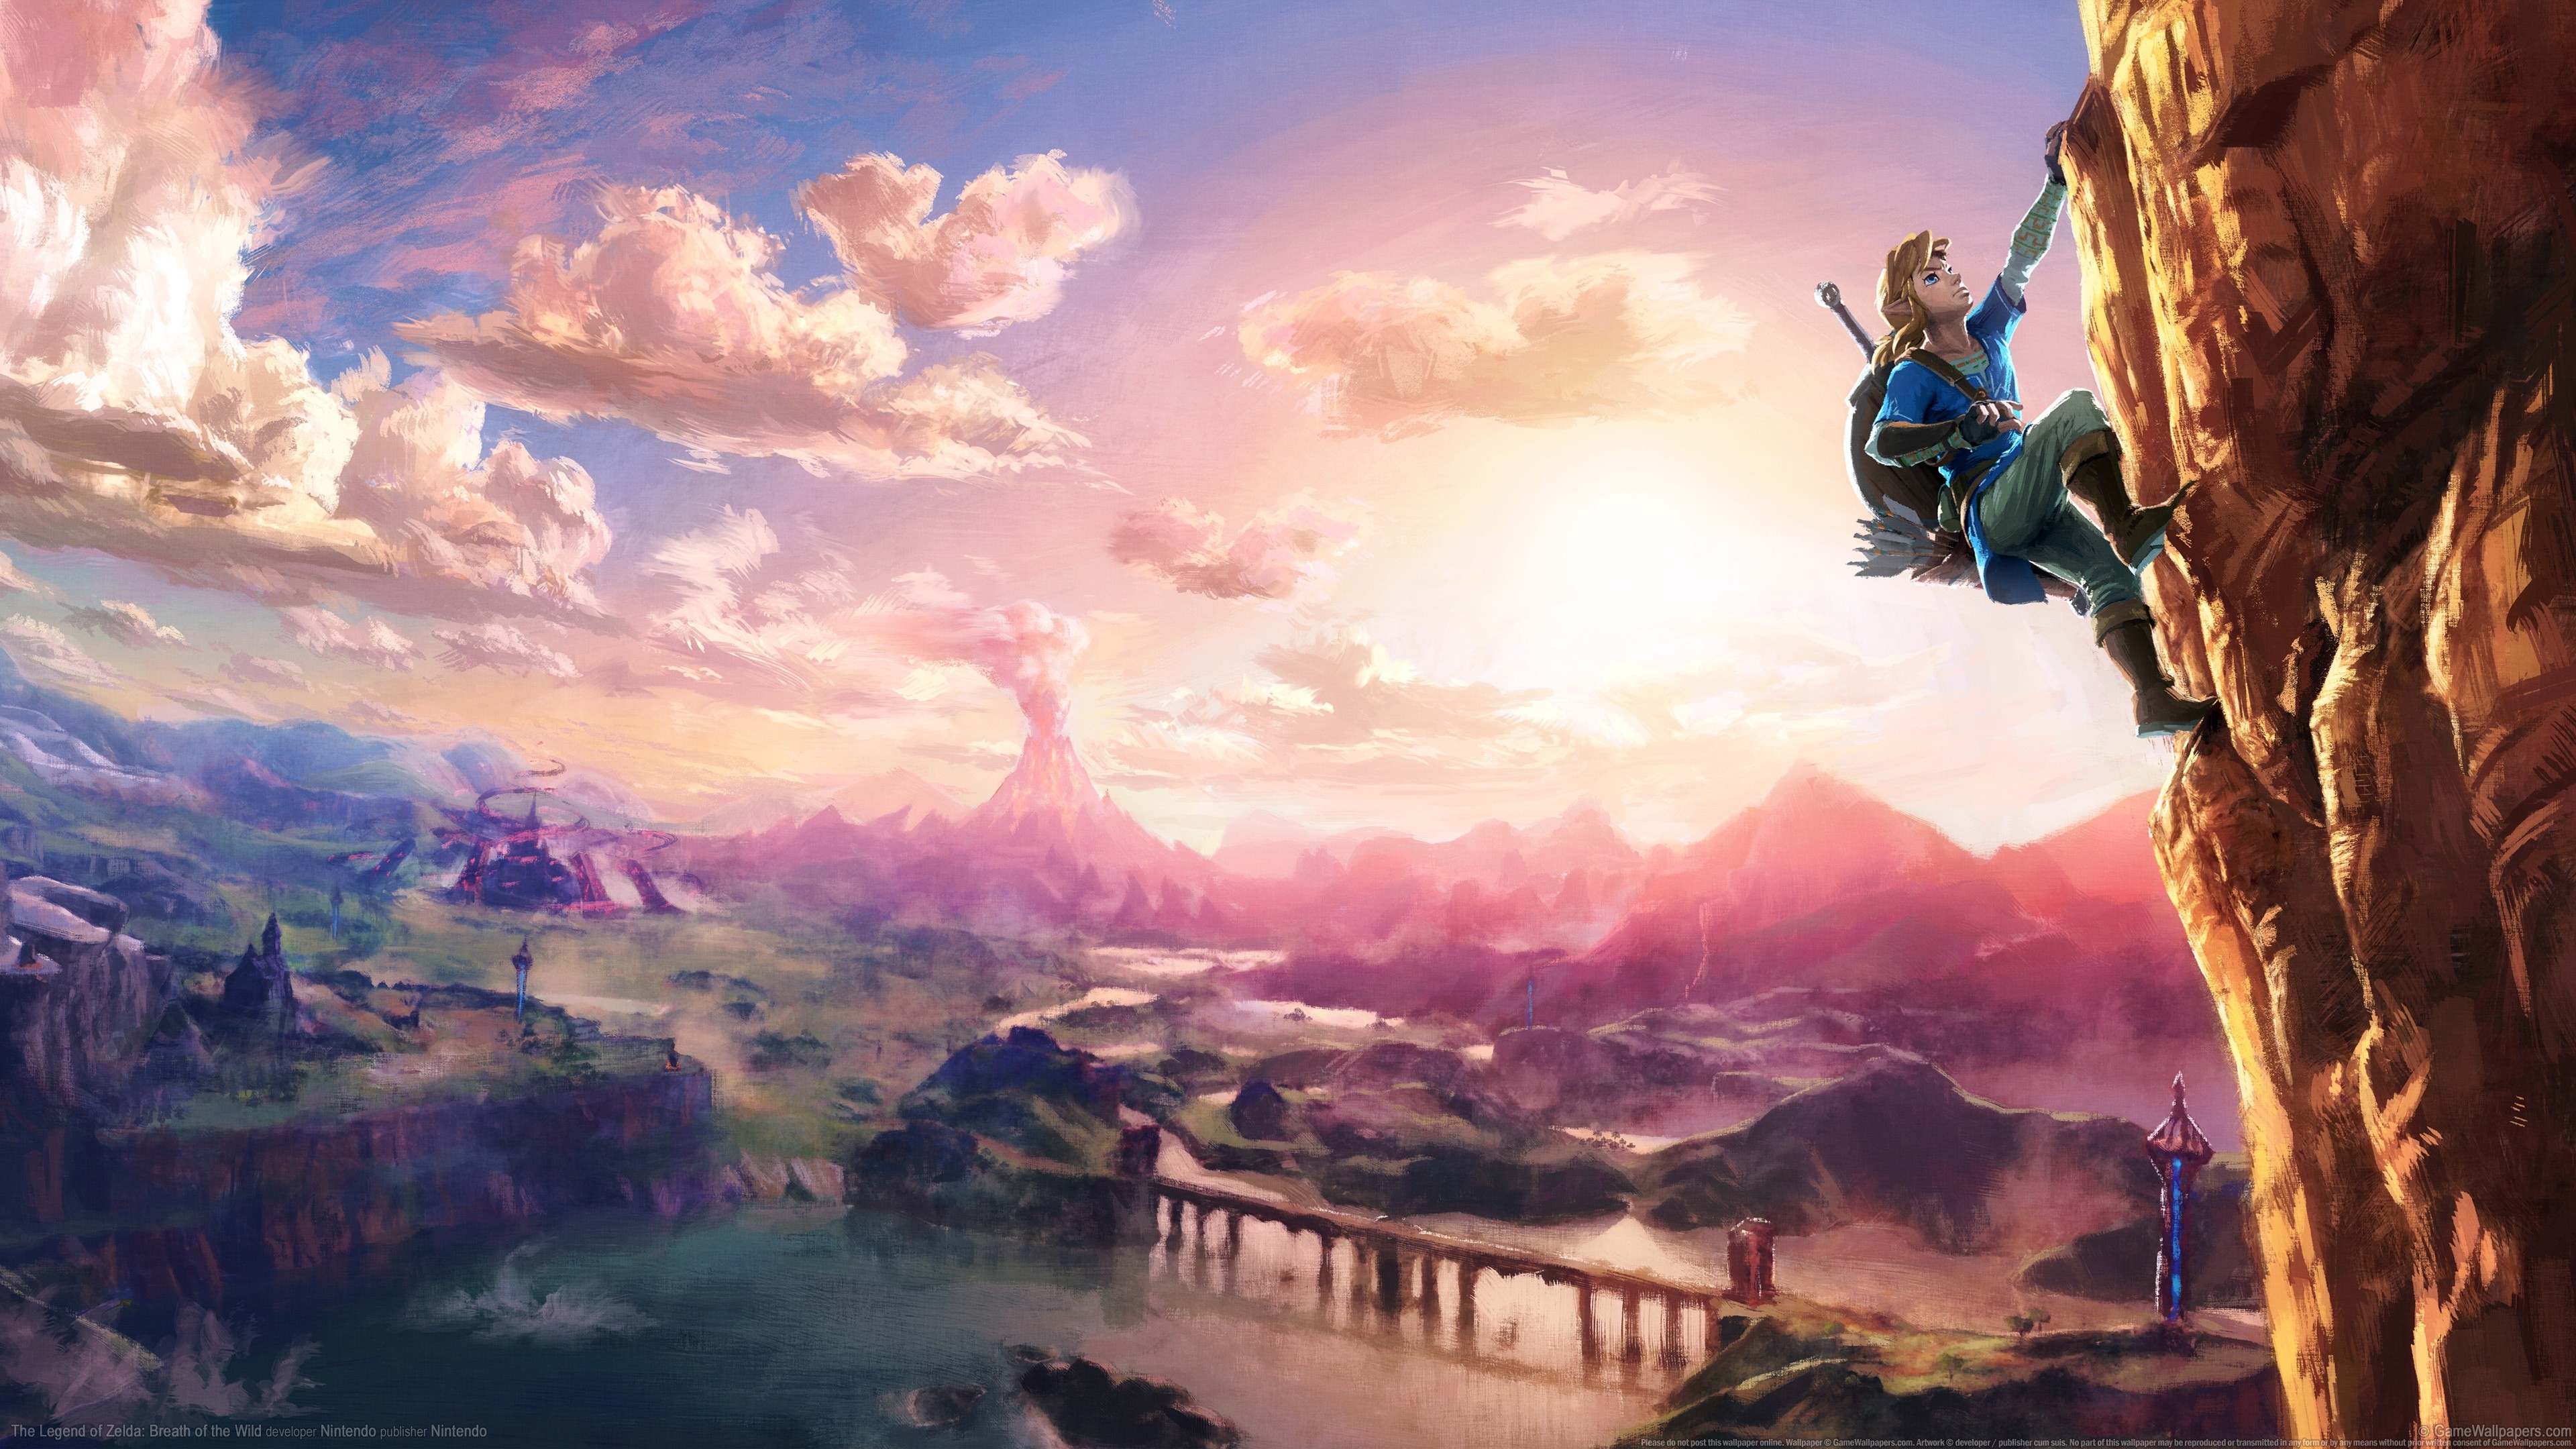 The Legend Of Zelda Link Wii U Nintendo Rock Climbing Heights The Legend Of Zelda Breath Of The Wild 3840x2160